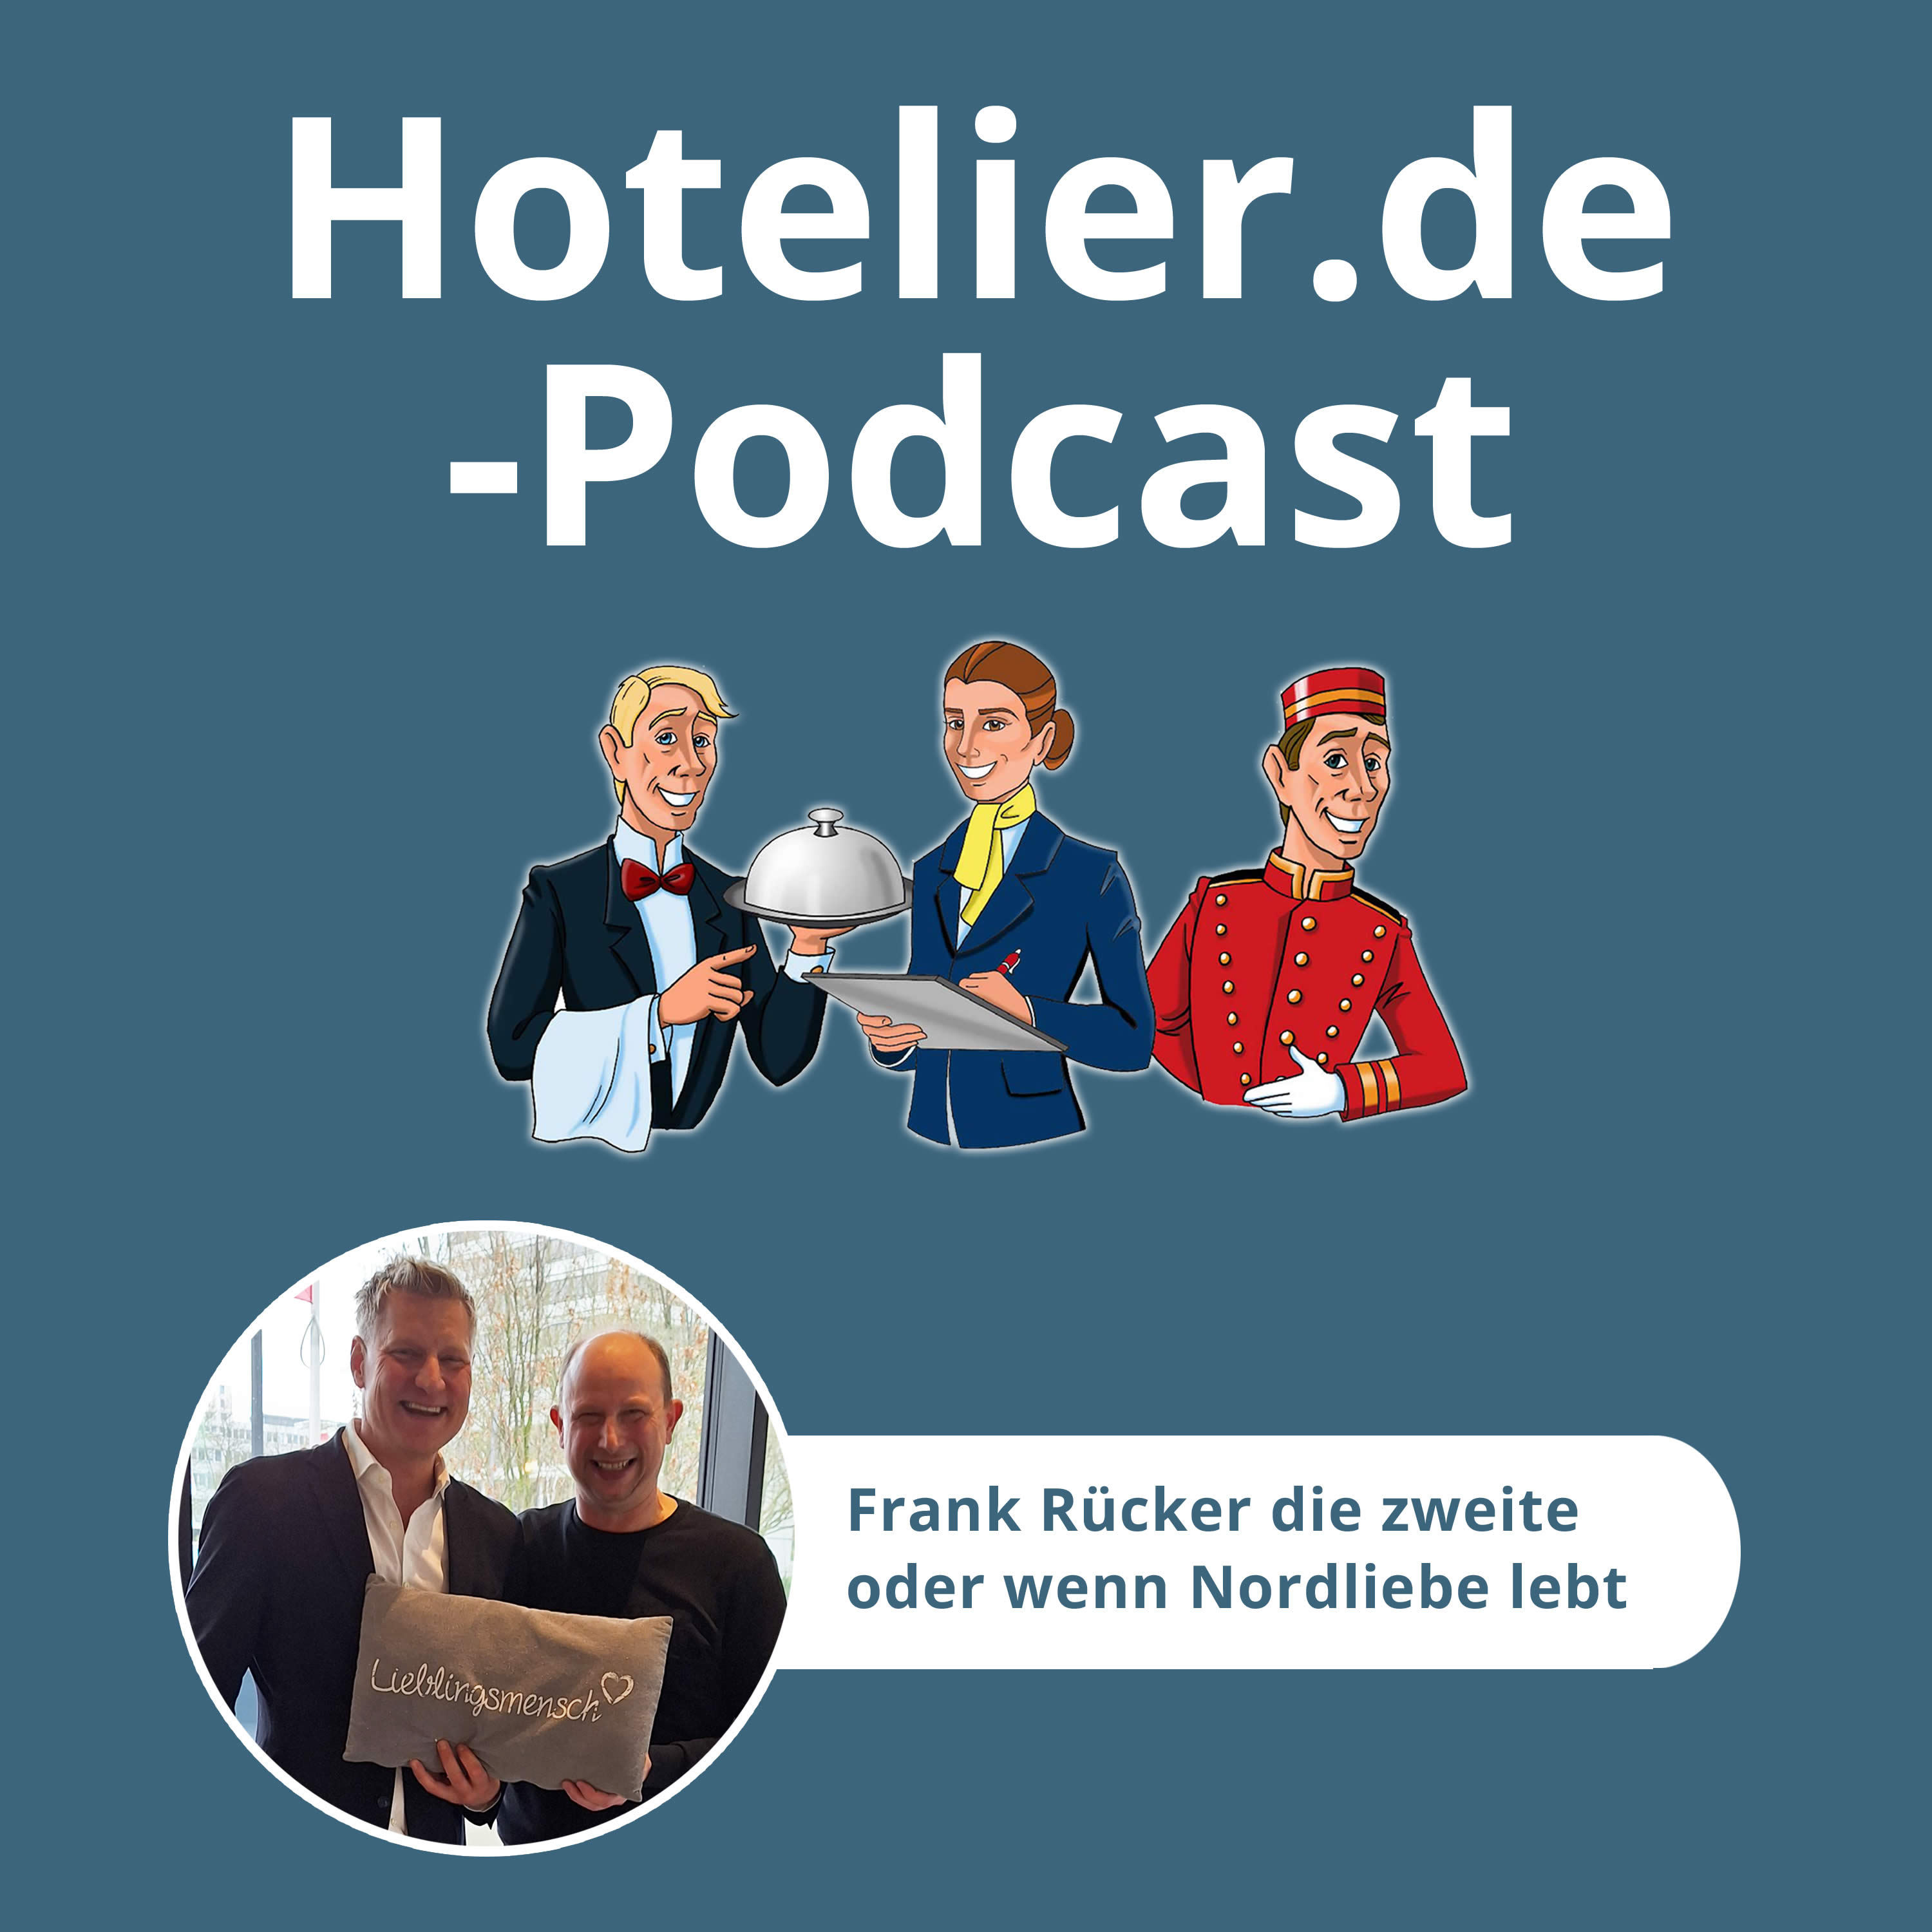 Frank Rücker und seine erfüllte Hotel-Nordliebe – Folge 79